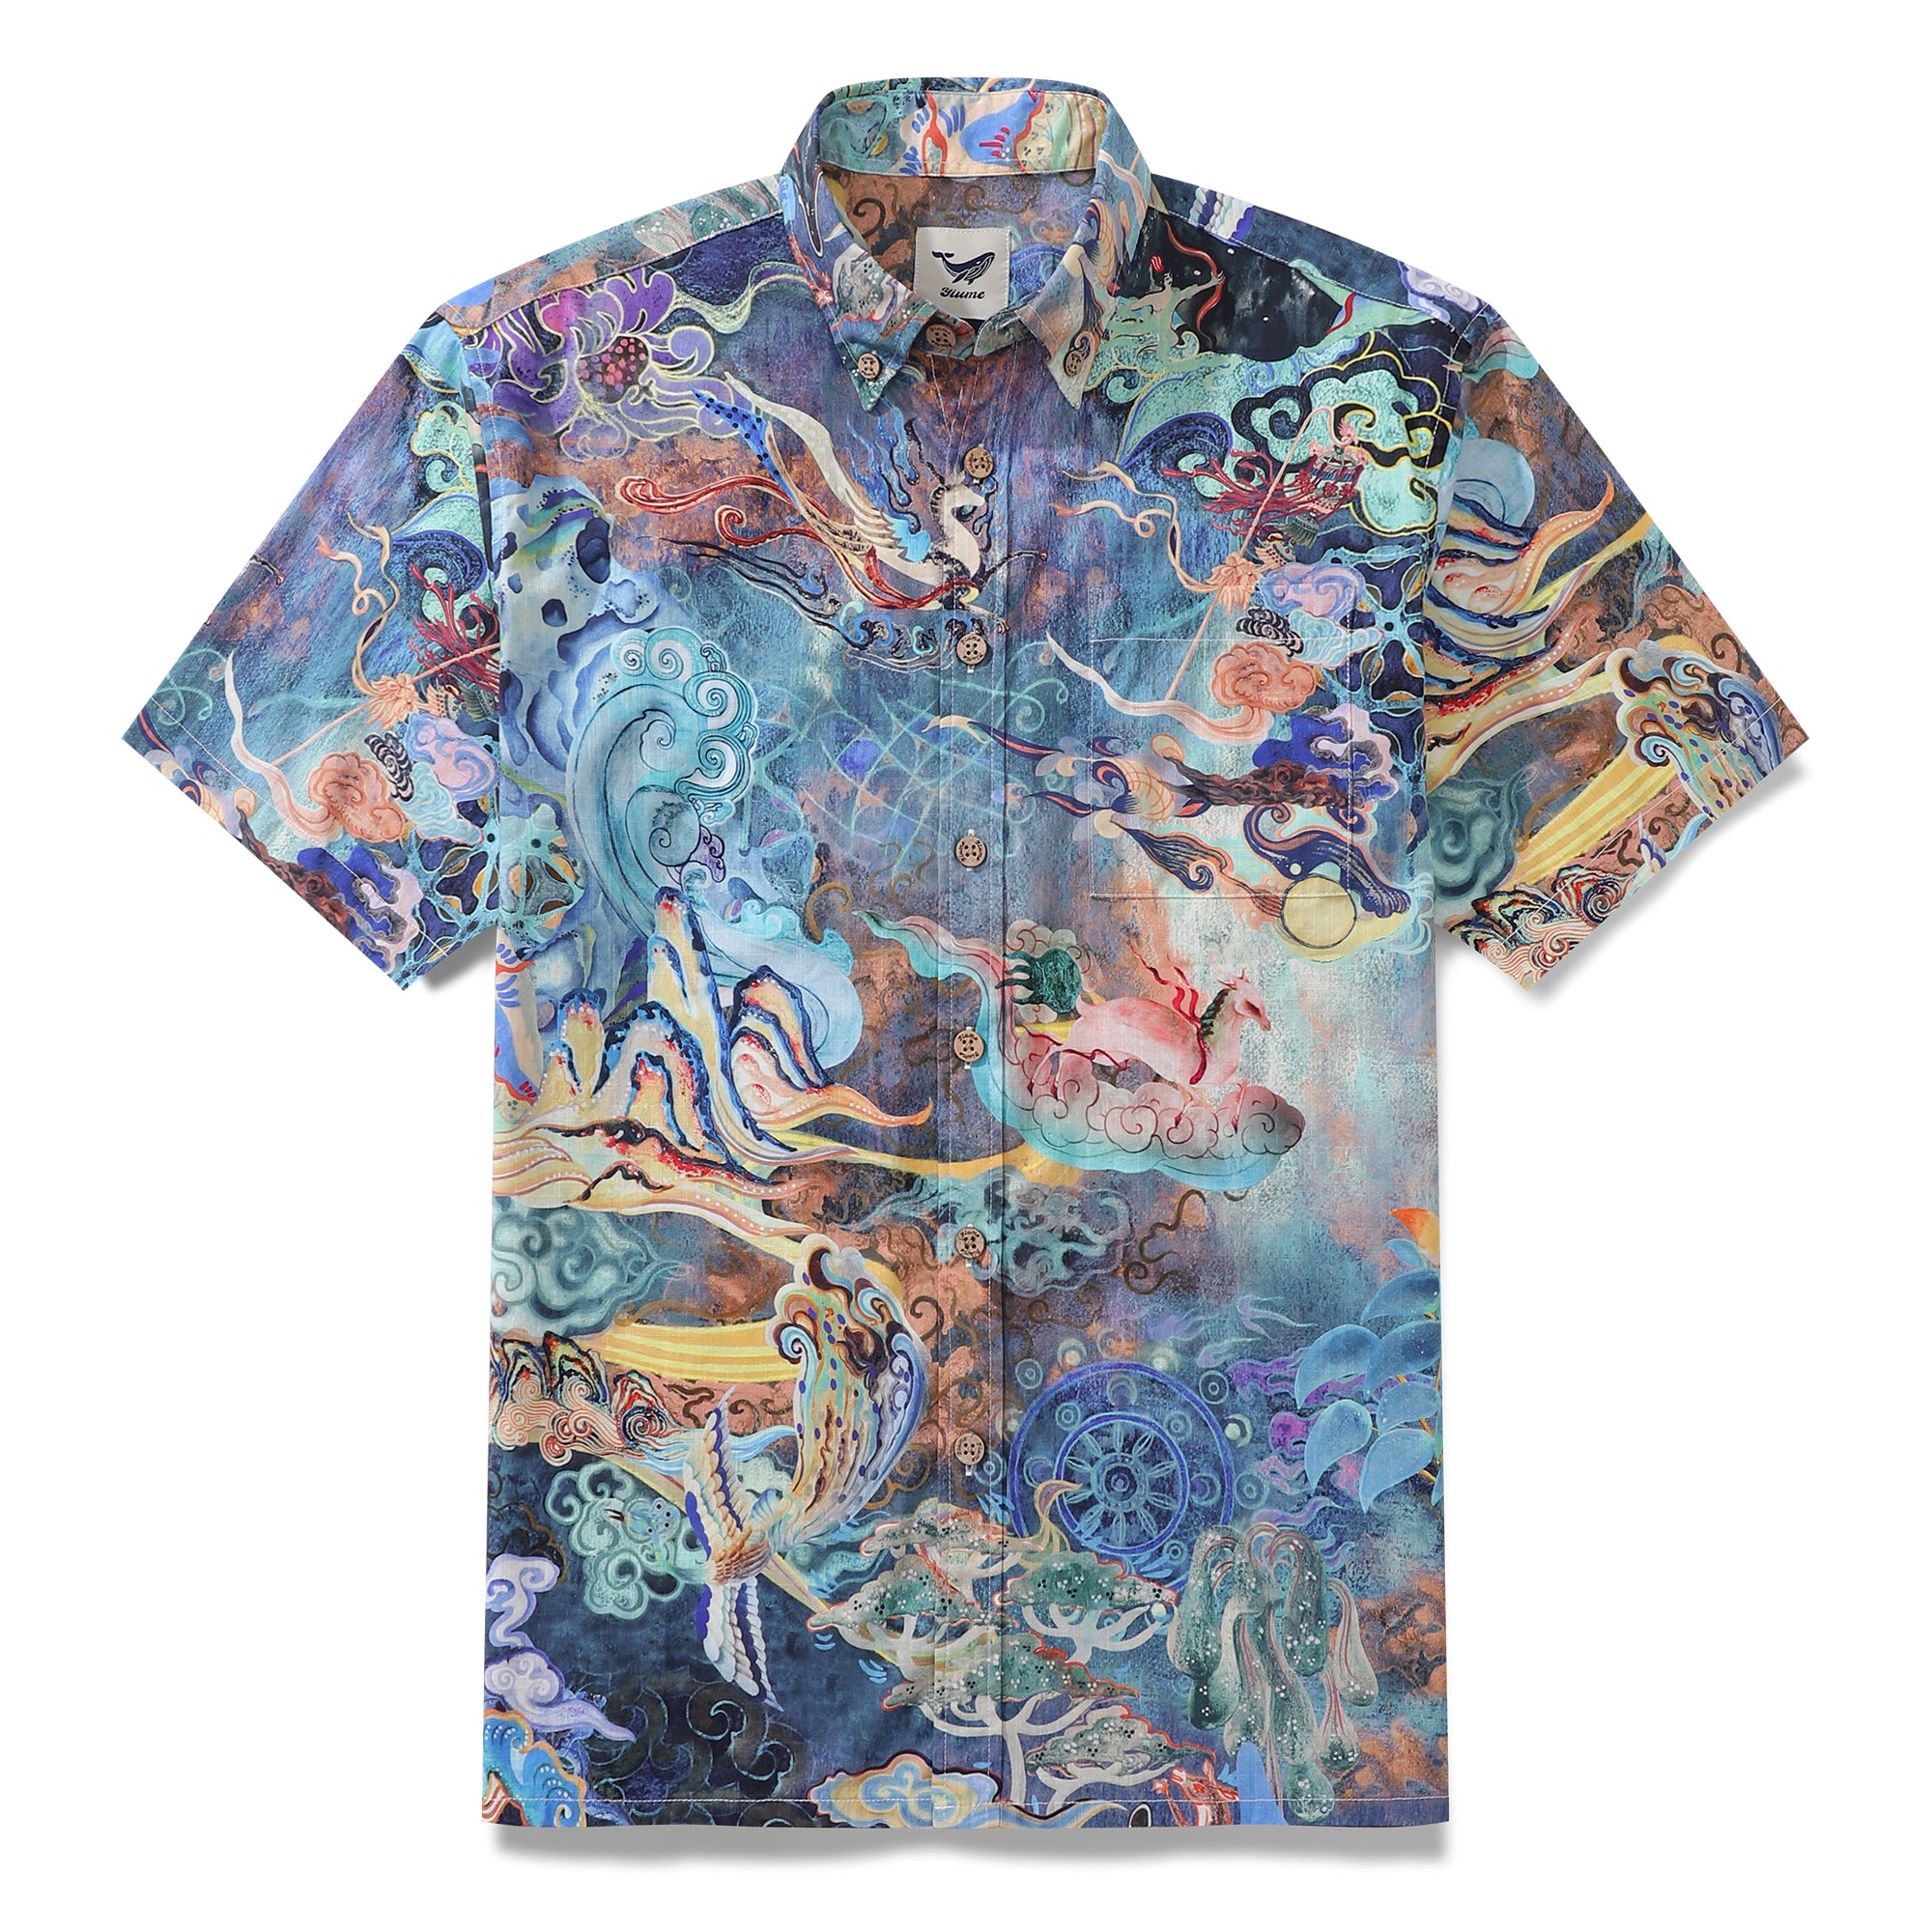 Cotton Hawaiian Shirt For Men Dreamland Art Button-down Short Sleeve Camp Shirt